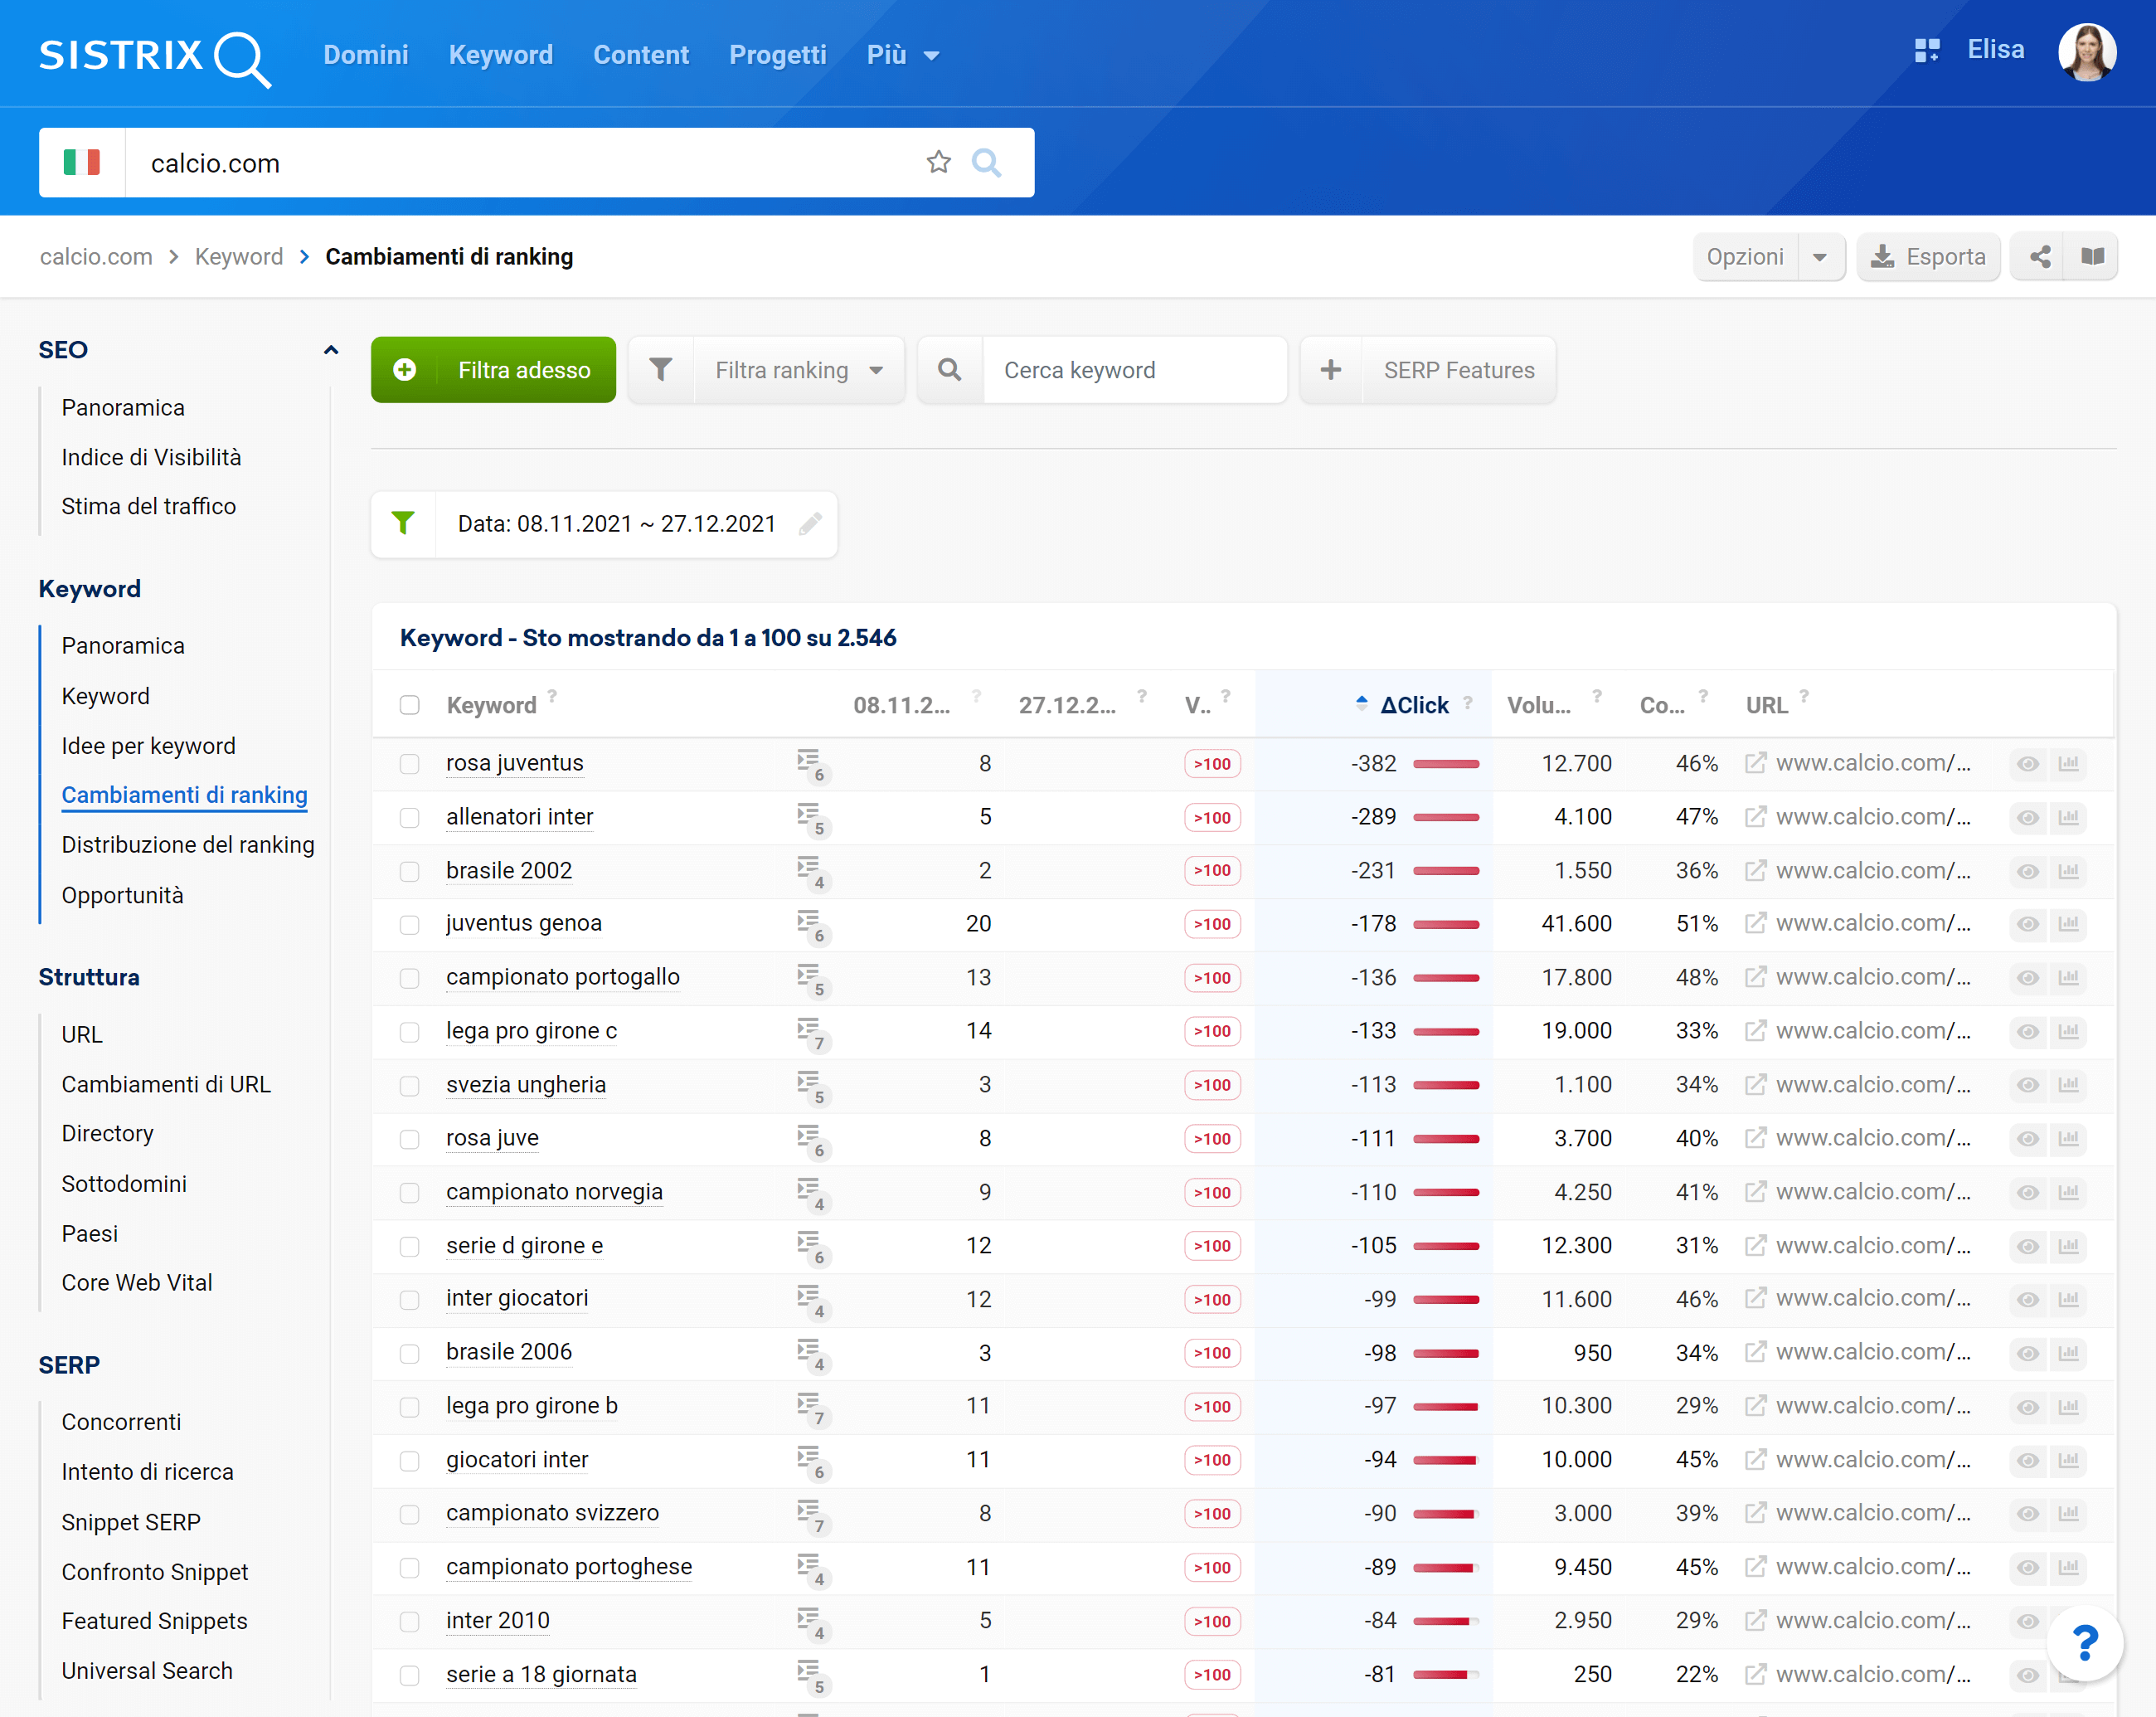 Ranking persi di calcio.com